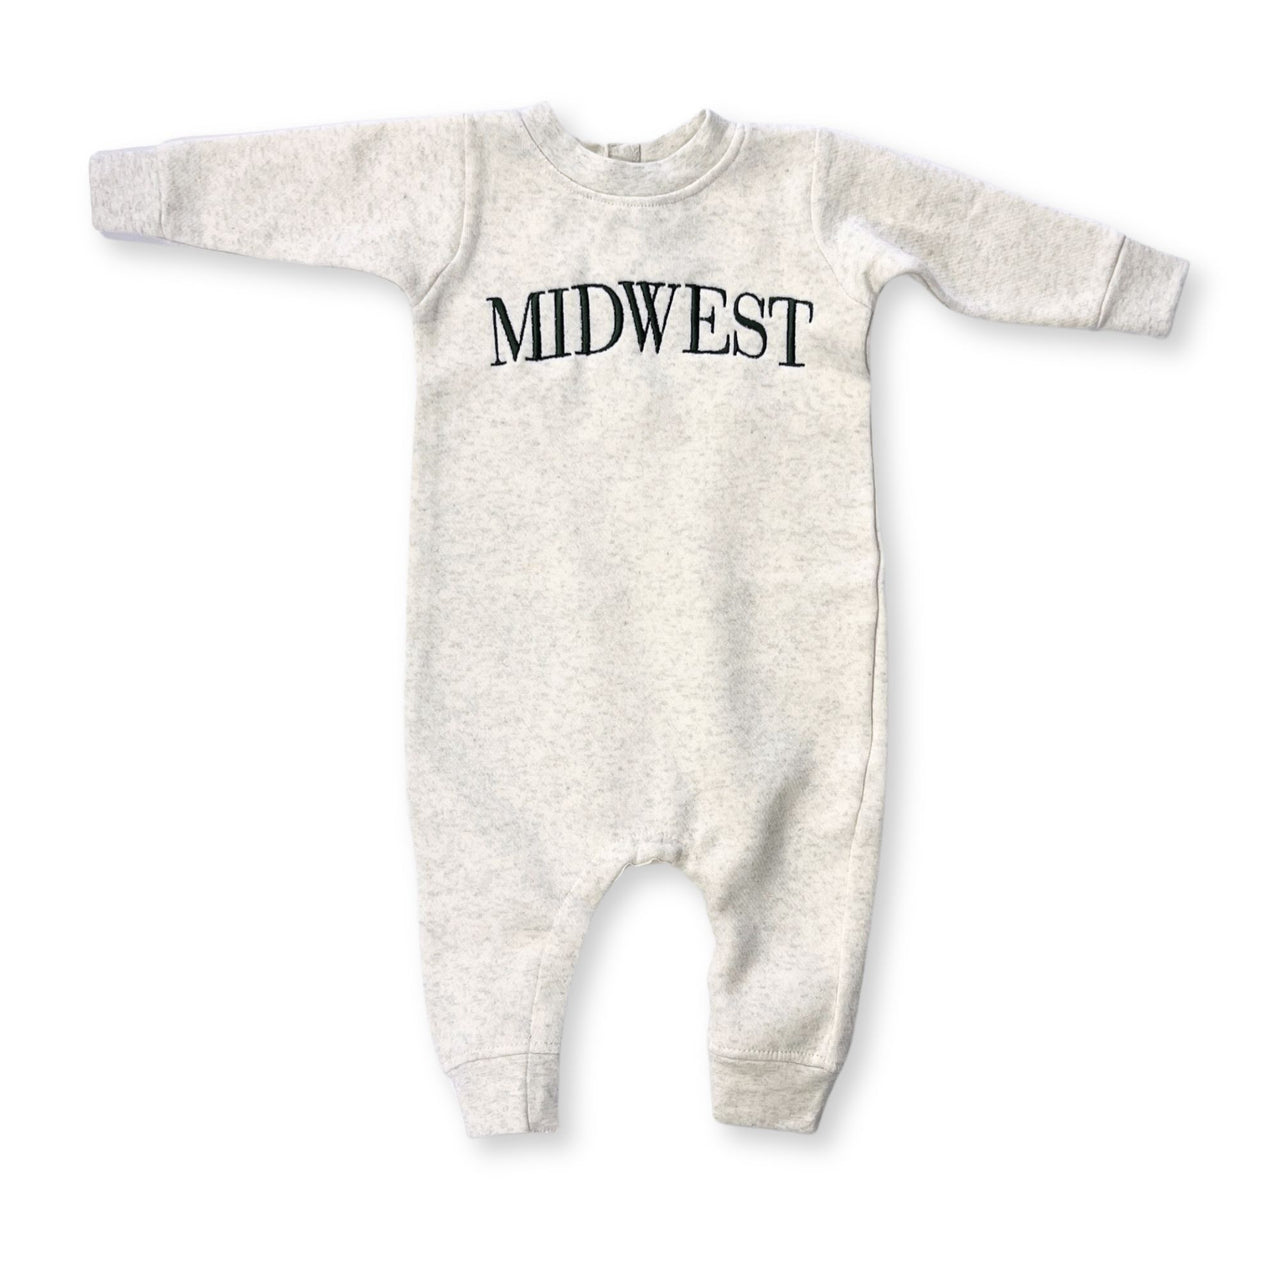 Midwest Baby Romper Sweatshirt - Oat